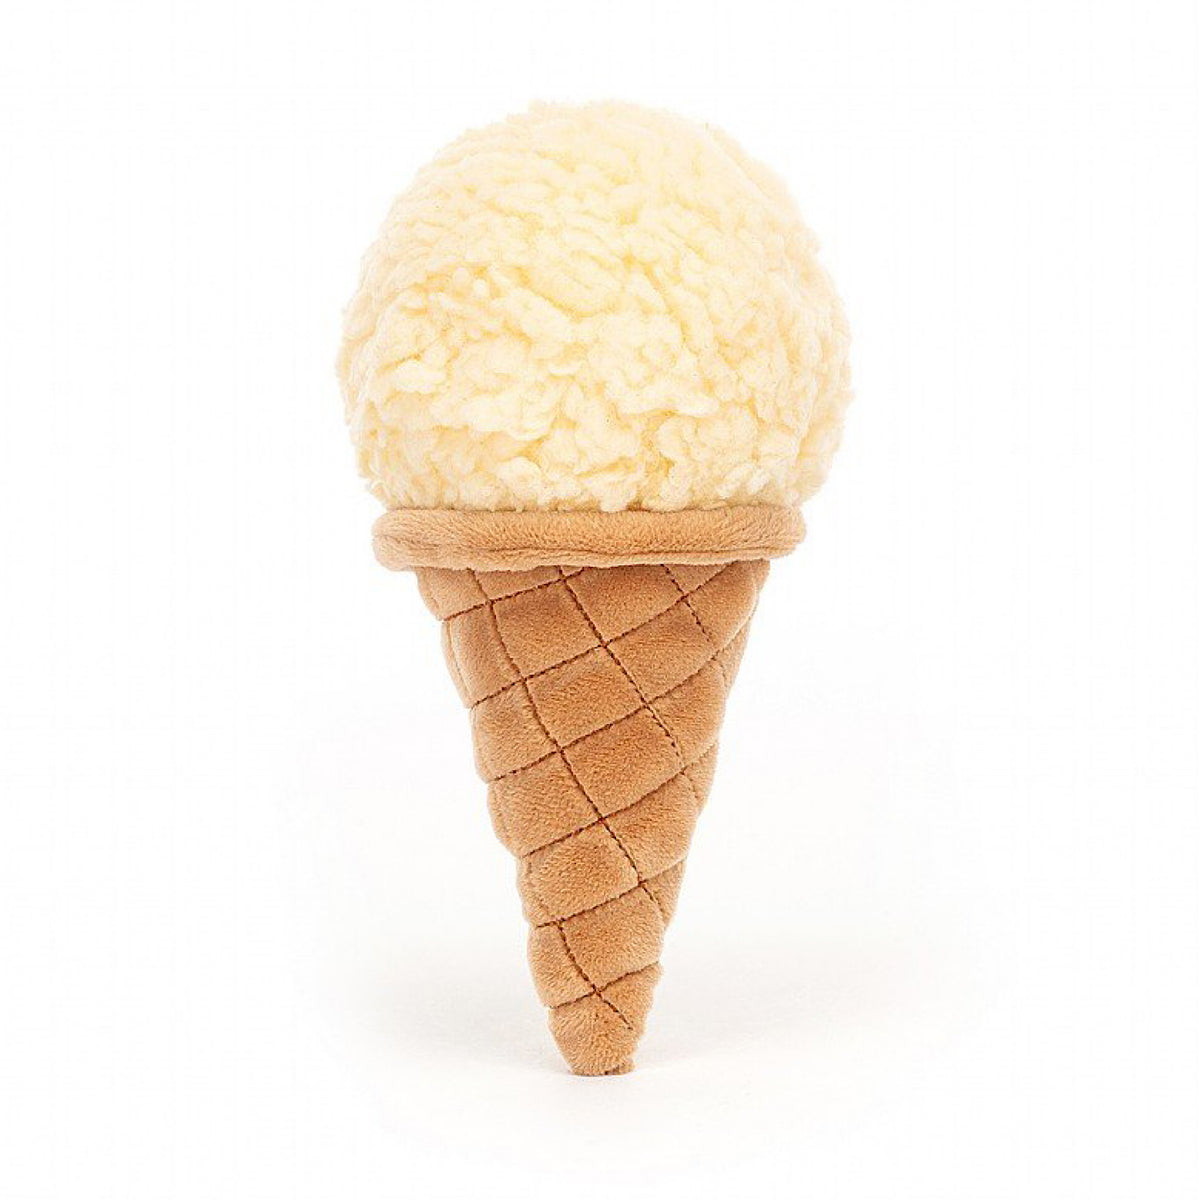 Irresistible Ice Cream, Vanilla